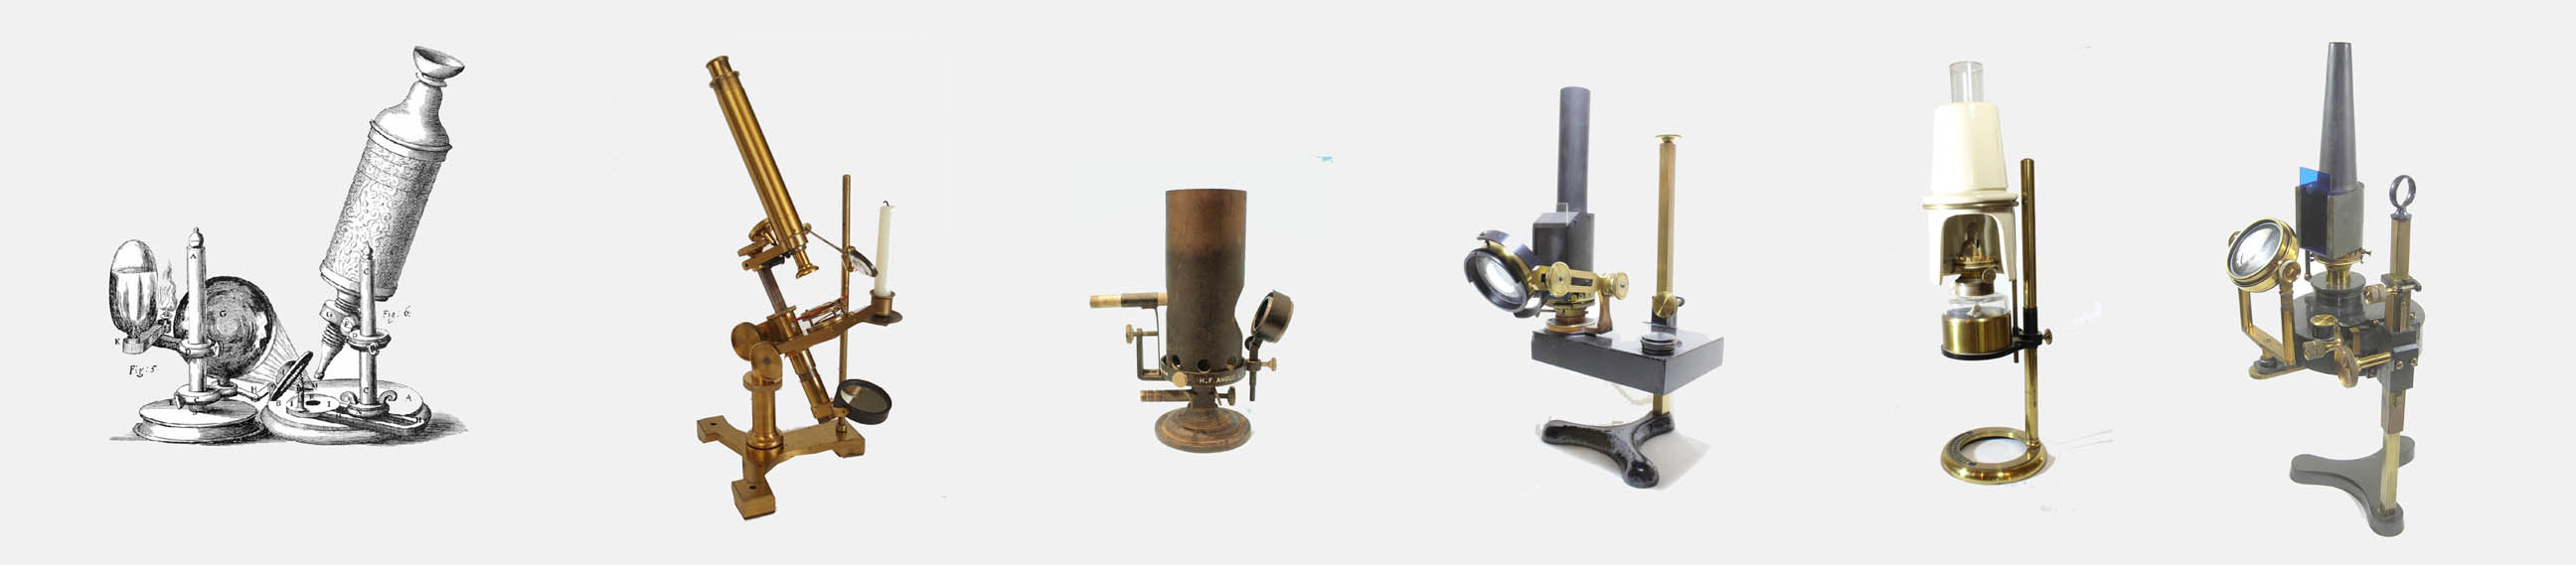 The history of microscopes